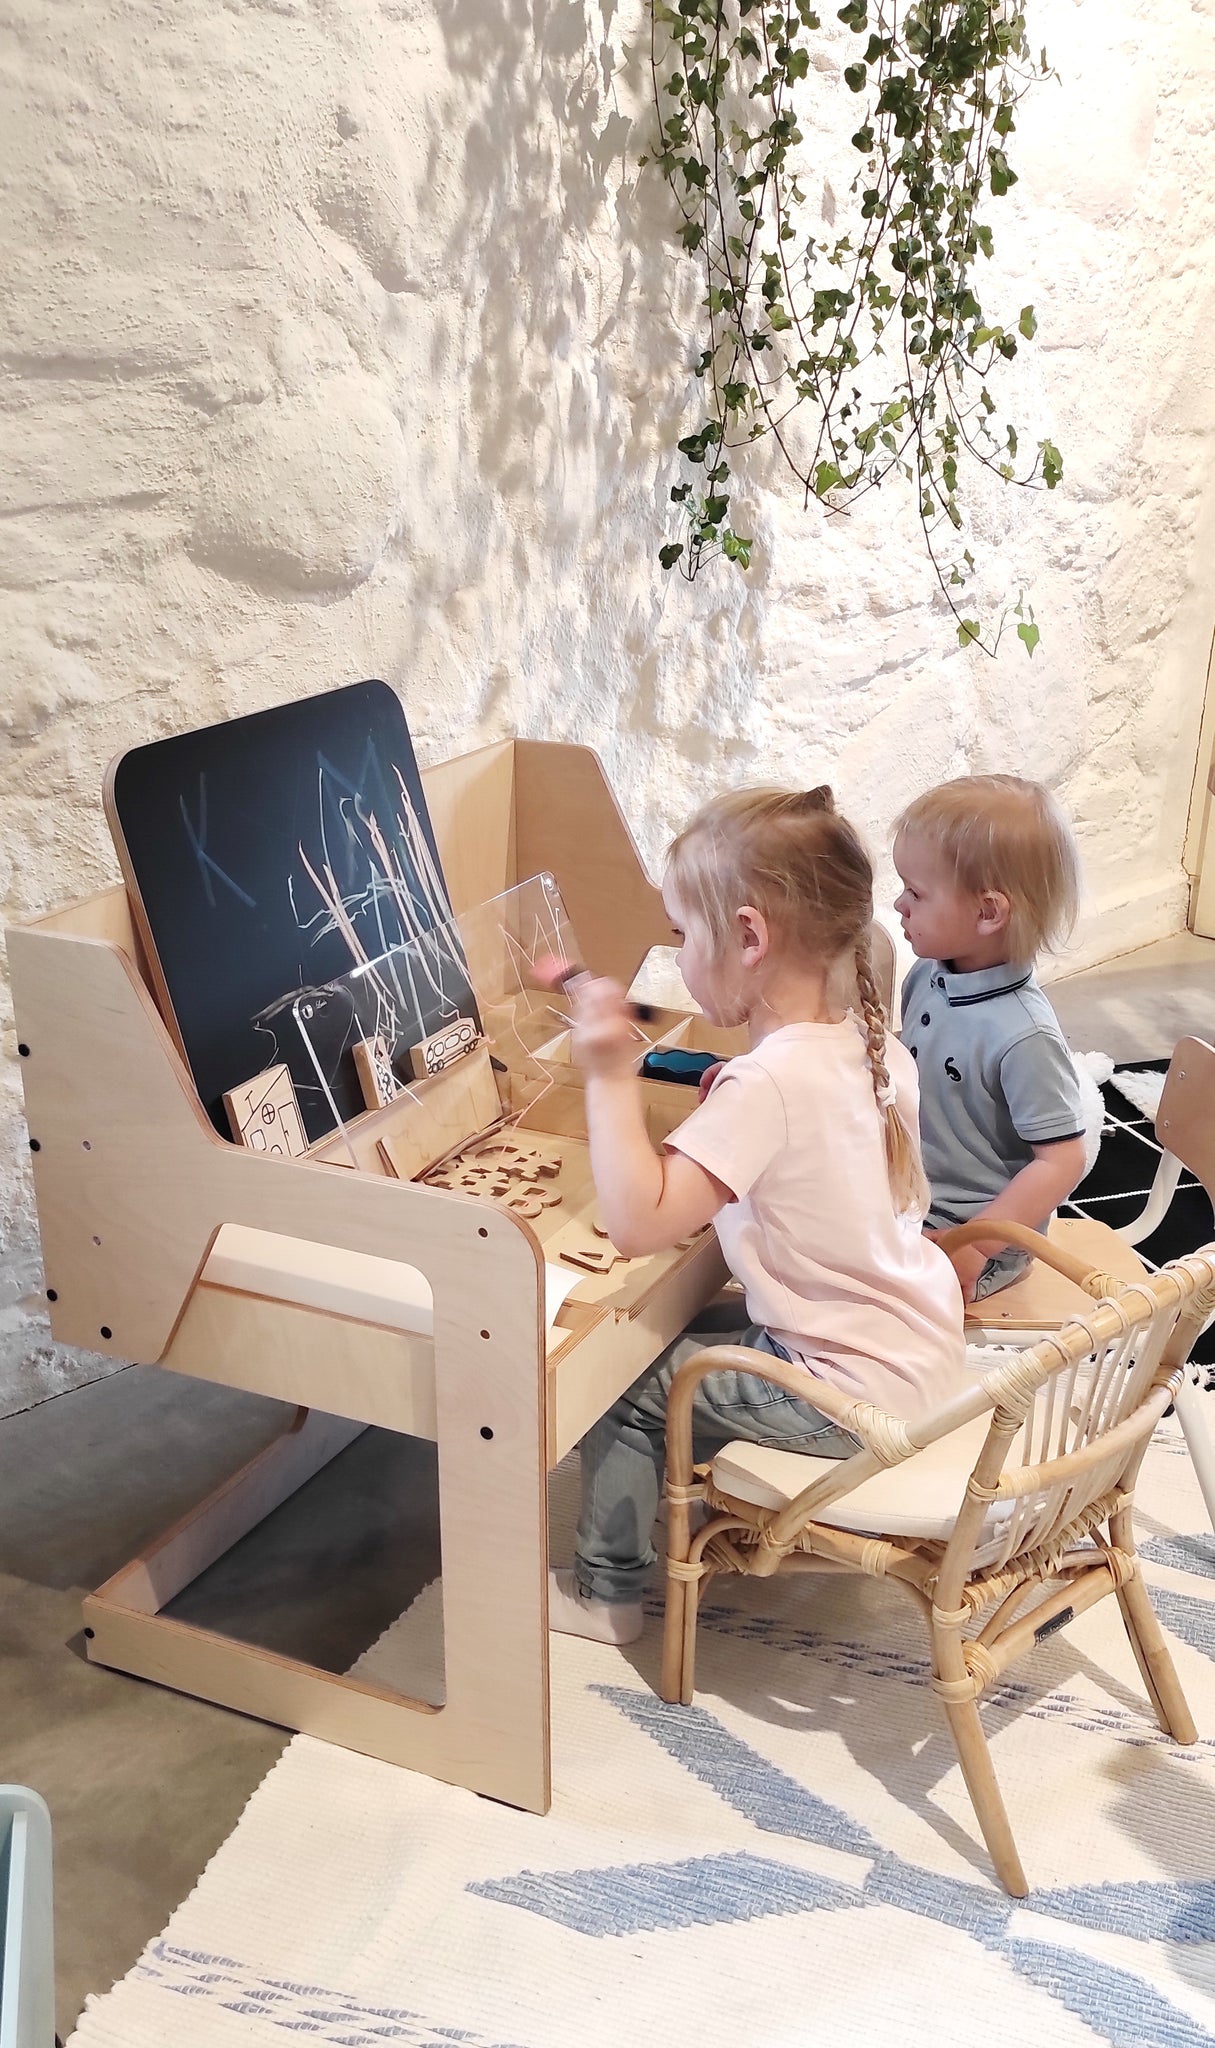 Meubles Montessori pour bébés et enfants - Découvrez nos meubles